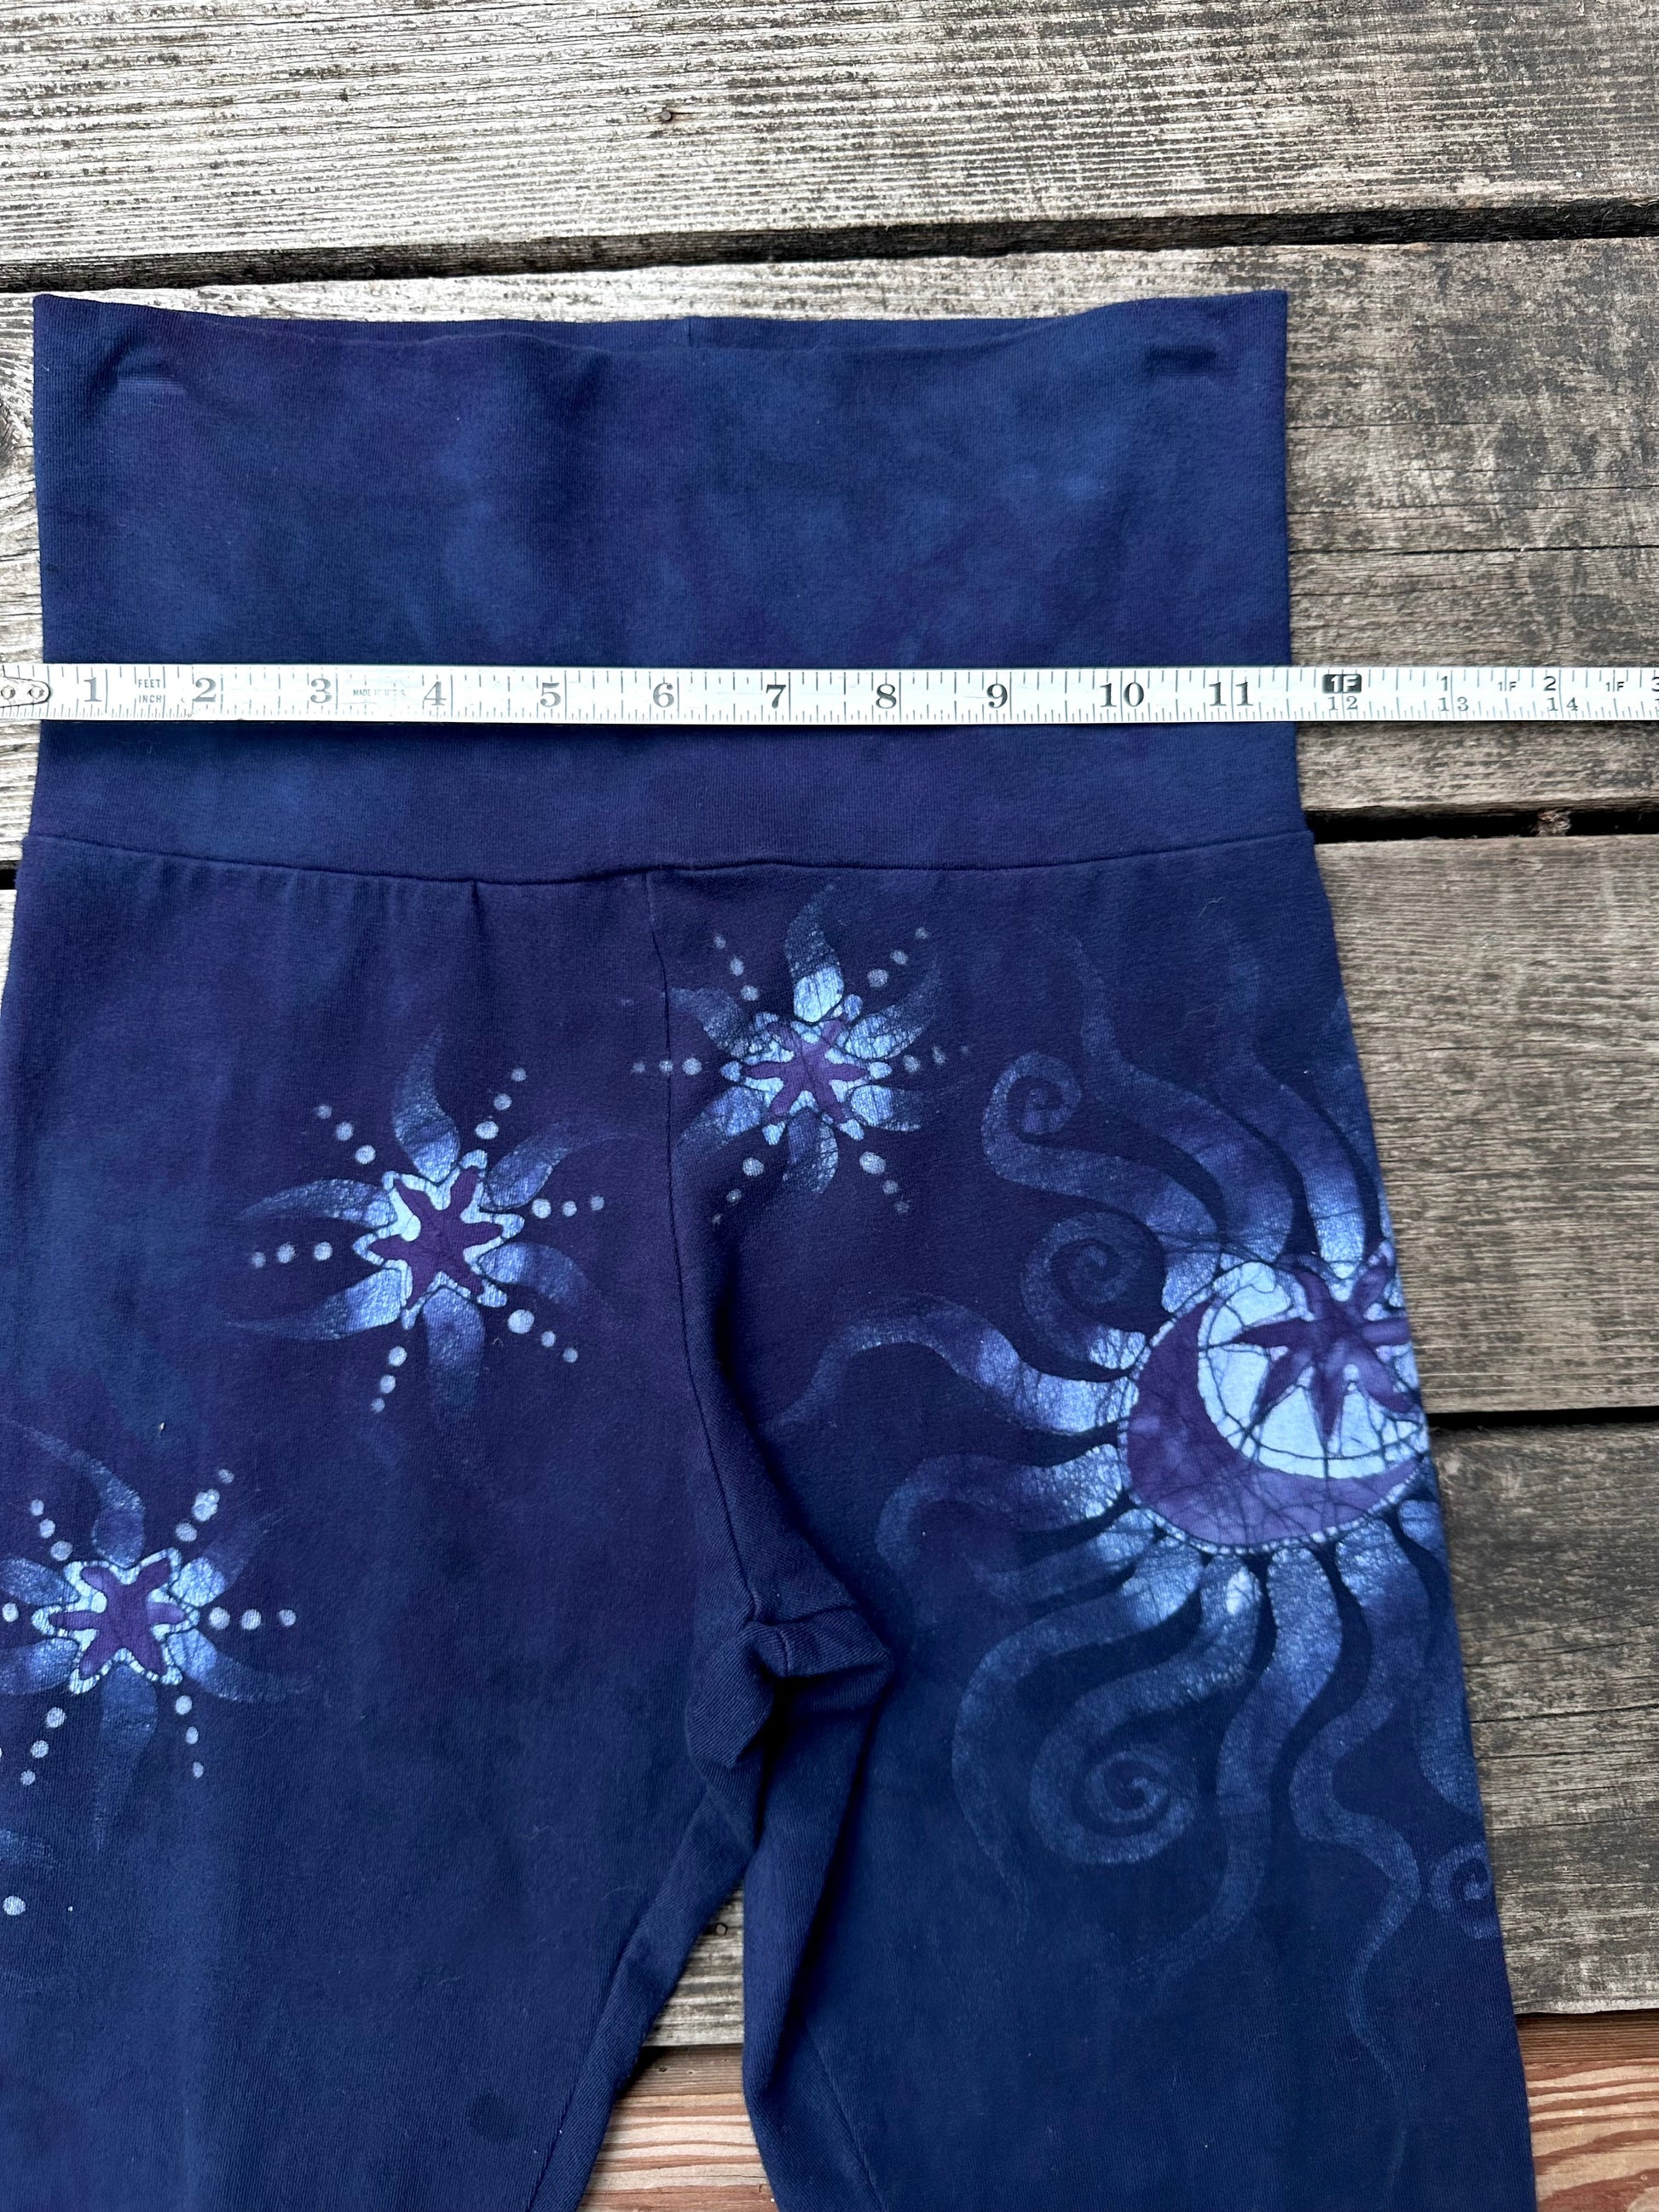 Dark Blue Moon and Stars Stretchy Movement Pants - Size SMALL Yoga Pants batikwalla 